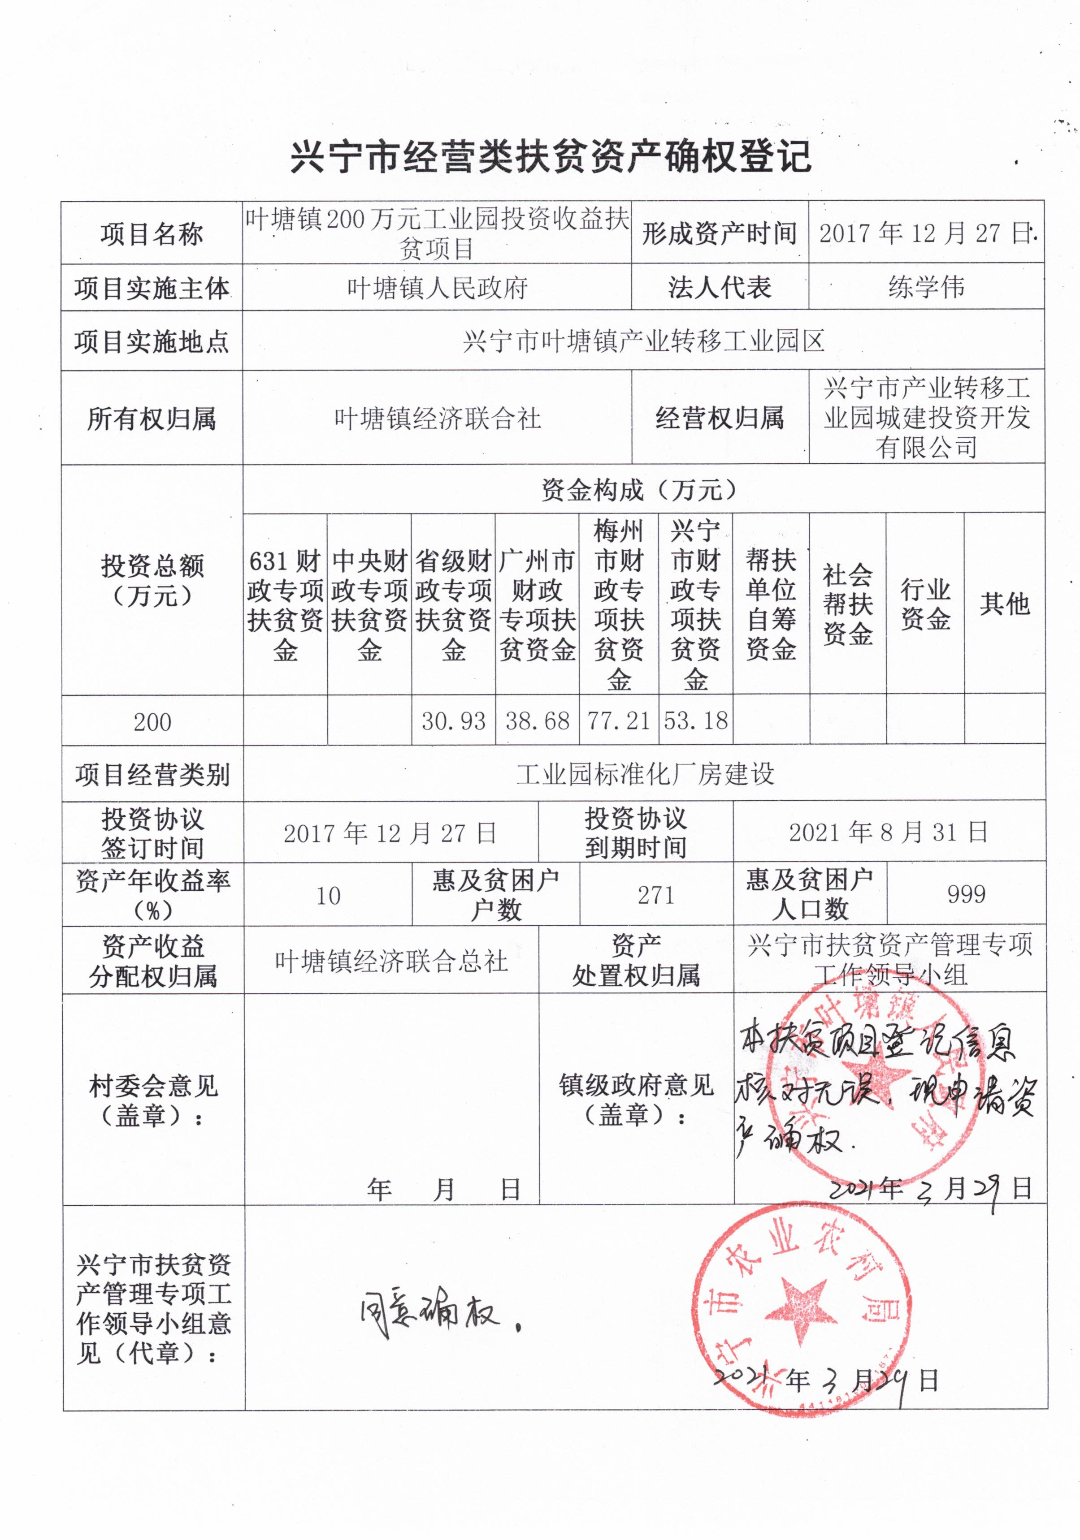 叶塘镇200万元工业园投资收益扶贫项目确权登记表.jpg